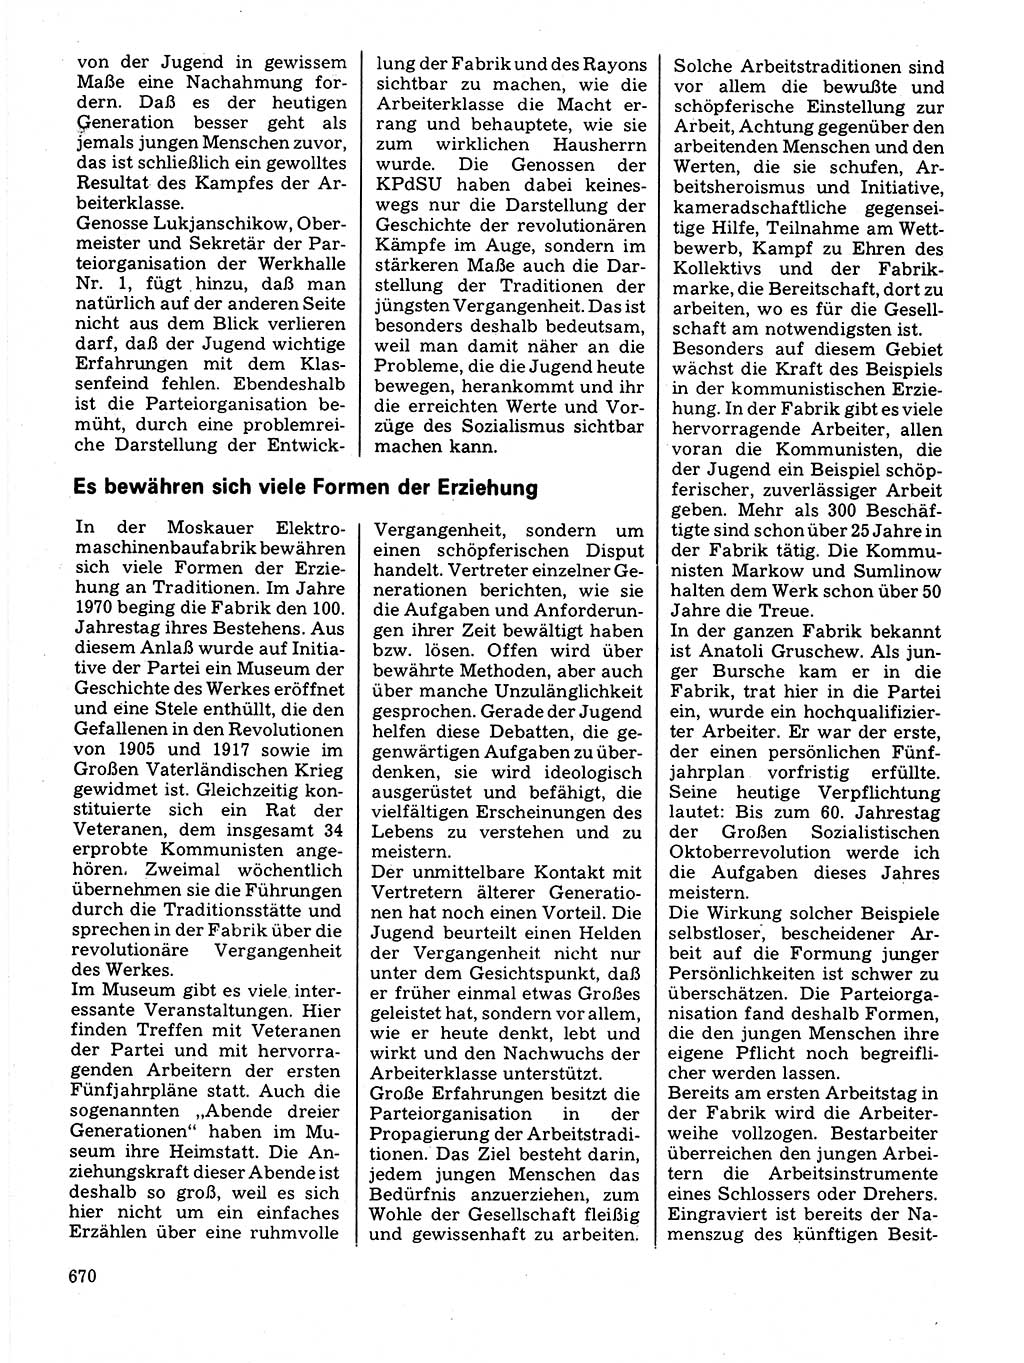 Neuer Weg (NW), Organ des Zentralkomitees (ZK) der SED (Sozialistische Einheitspartei Deutschlands) für Fragen des Parteilebens, 32. Jahrgang [Deutsche Demokratische Republik (DDR)] 1977, Seite 670 (NW ZK SED DDR 1977, S. 670)